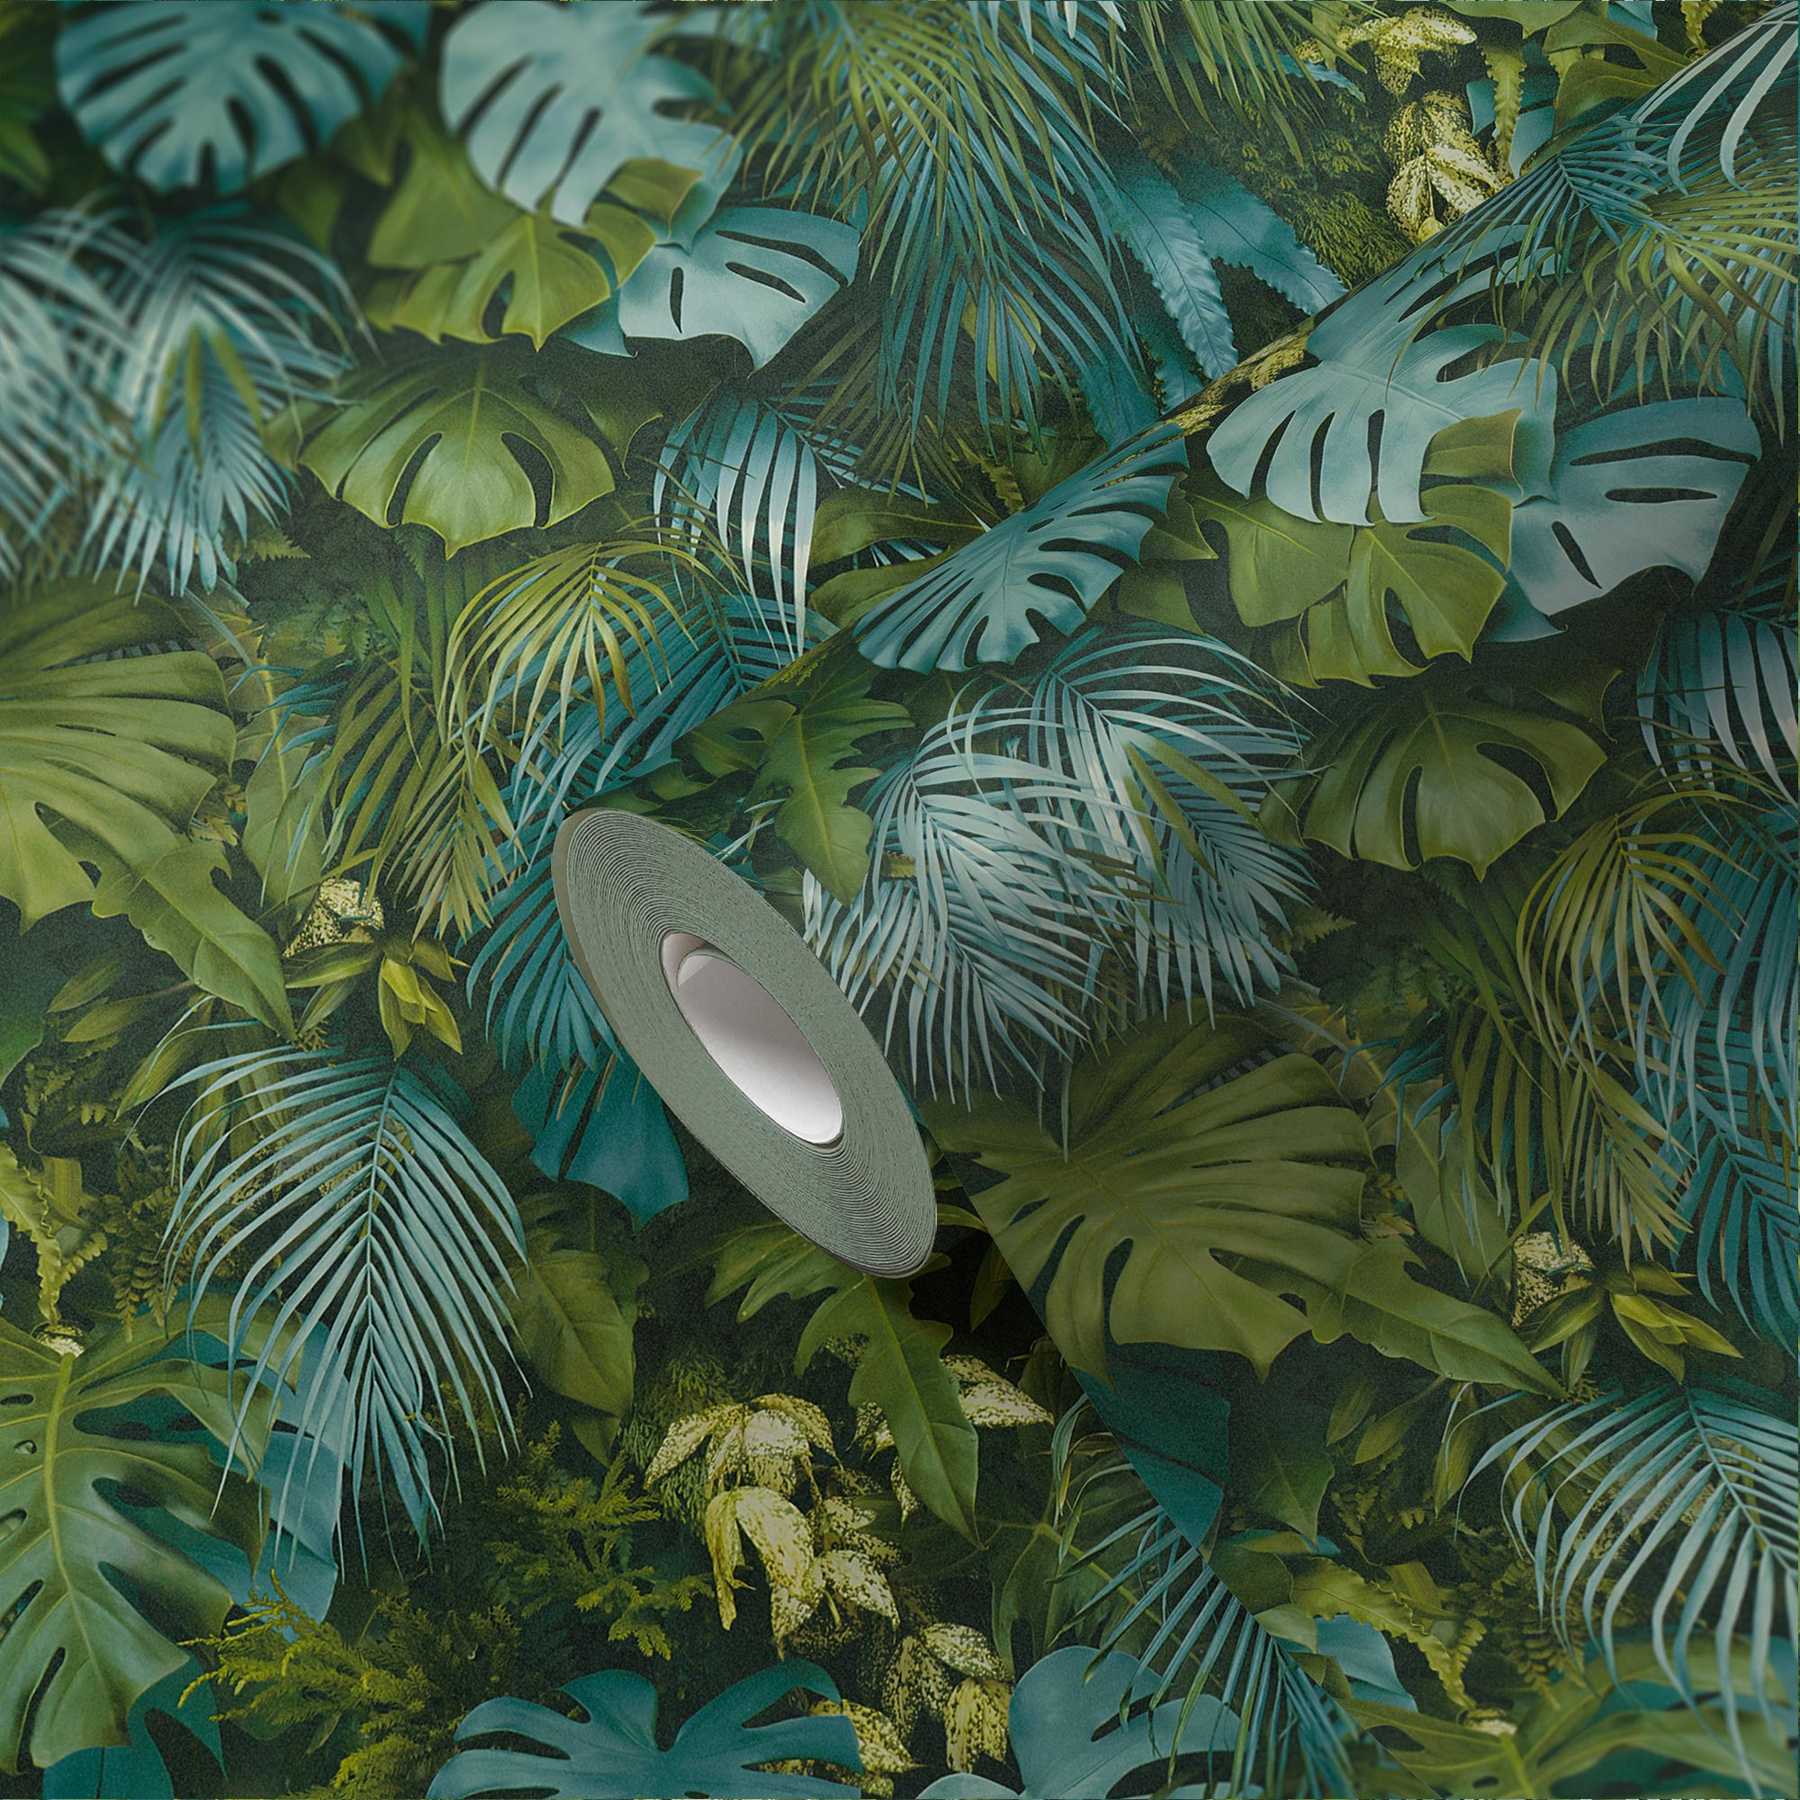             Behang groen blad bos, realistisch, kleuraccenten - groen, blauw
        